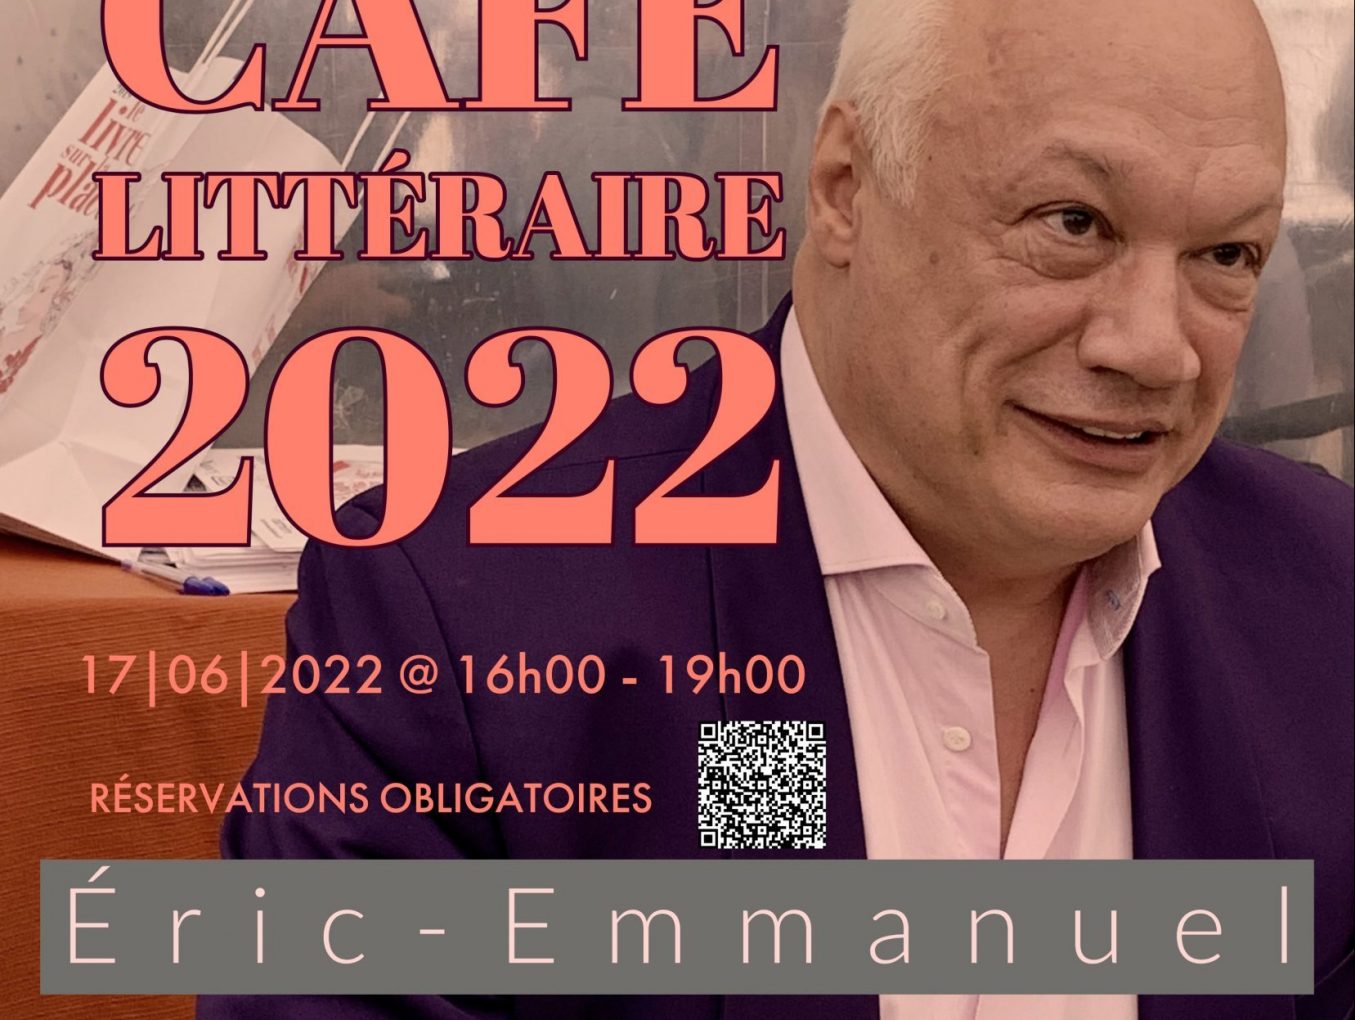 Café littéraire 2022 / Éric-Emmanuel Schmitt